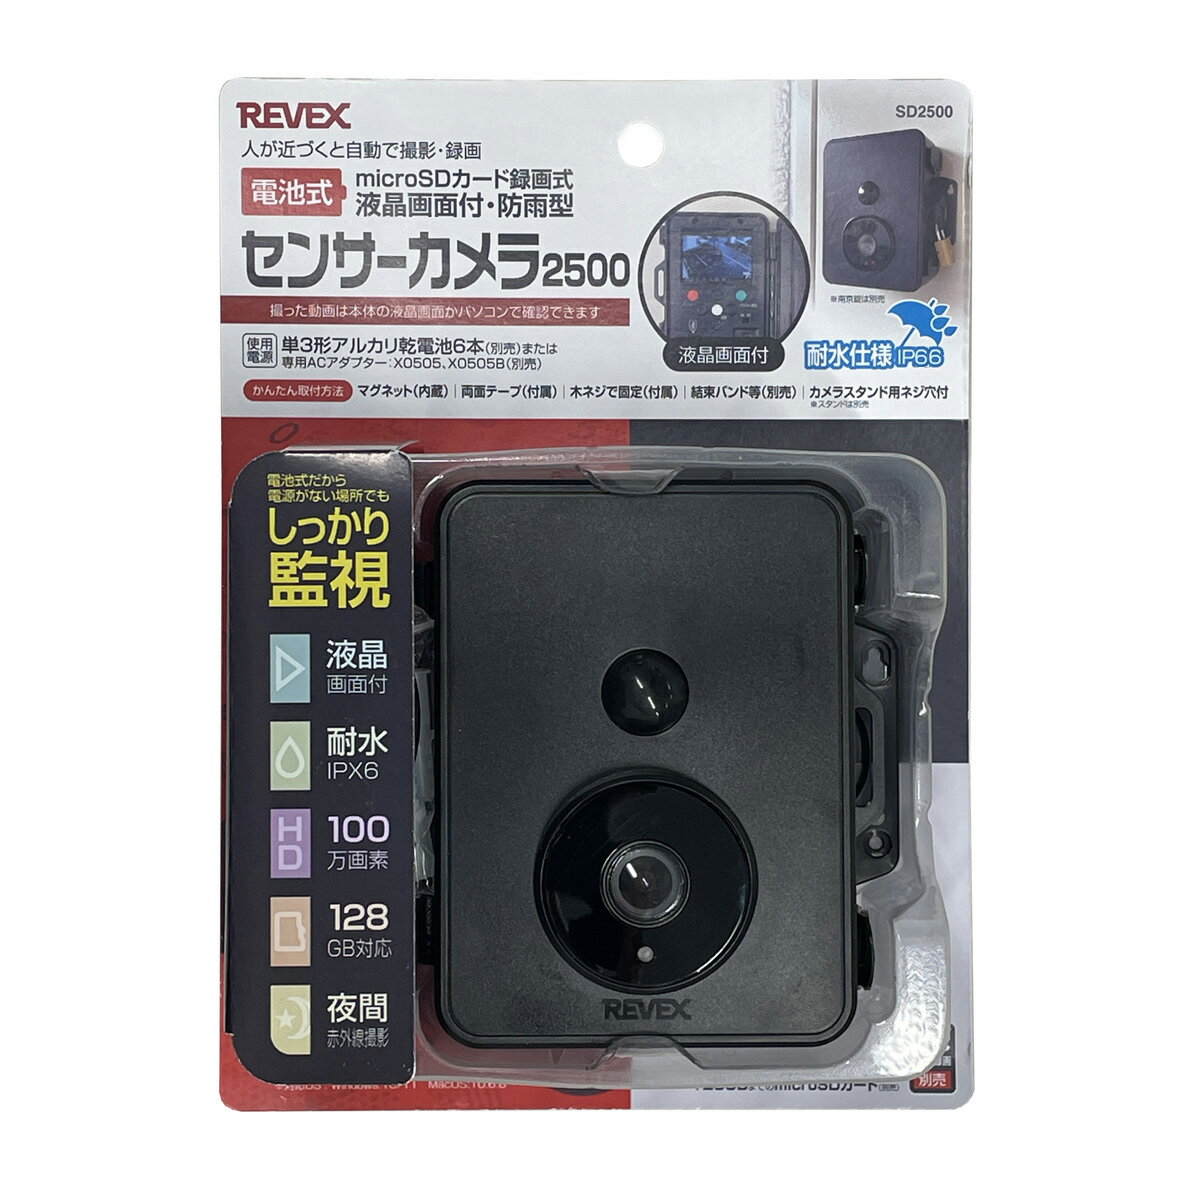 日本代購 REVEX SD2500 動態偵測攝影機 防盜 監視器 動偵機 電池式 液晶螢幕 紅外線LED IPX6防水